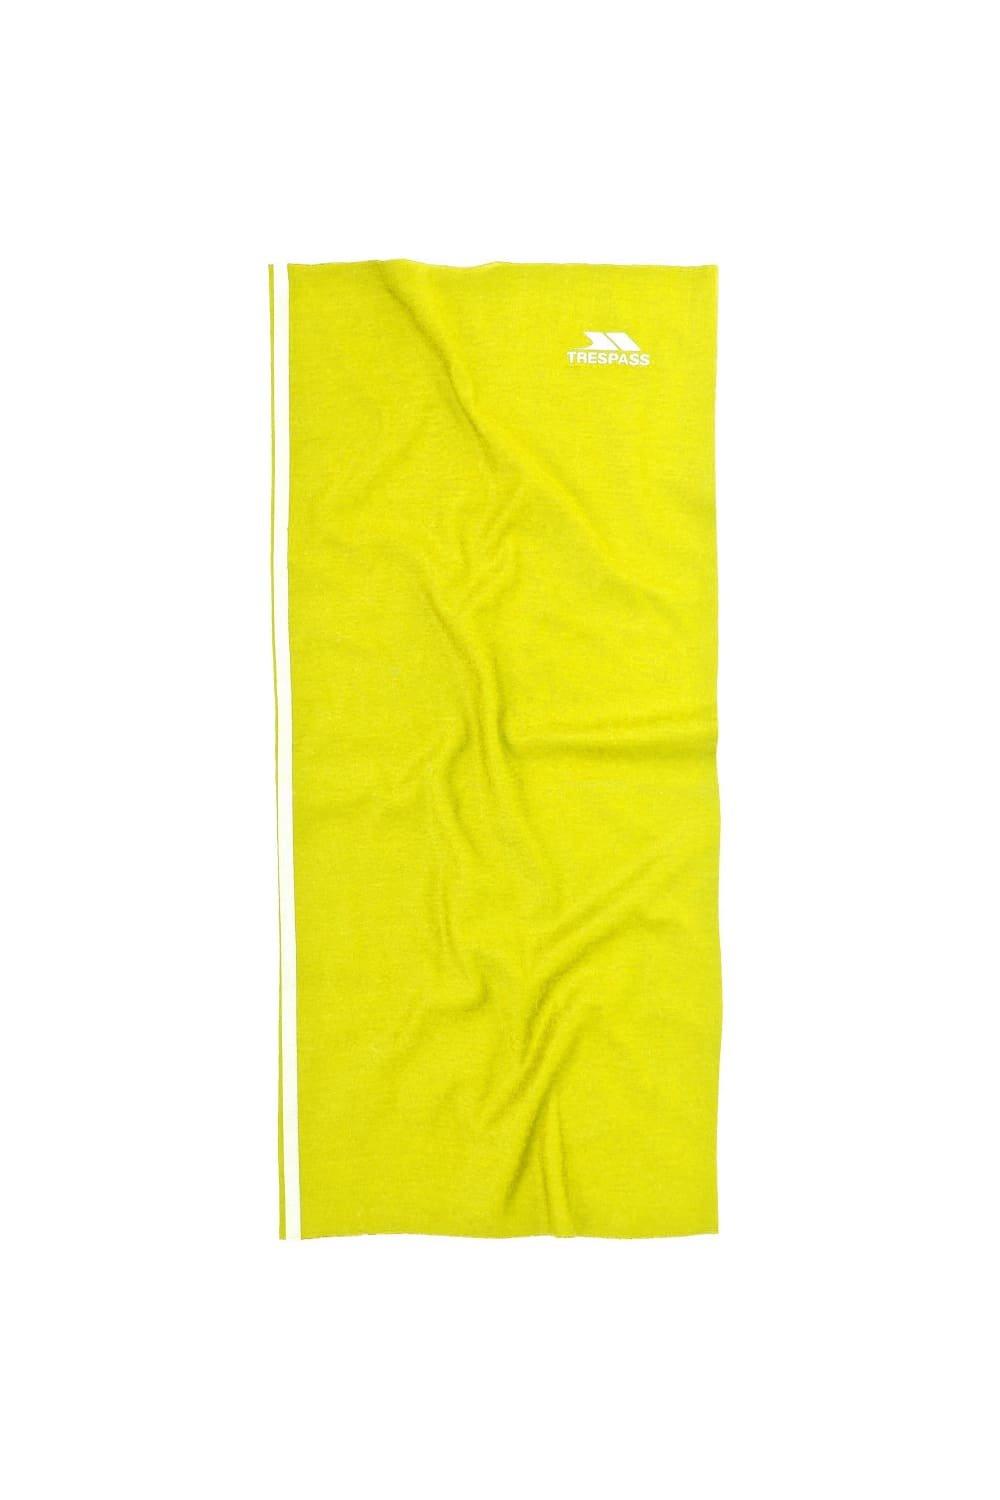 Многофункциональные гетры/снуд/шарф Quay Trespass, желтый многофункциональный шейный шарф tattler trespass розовый